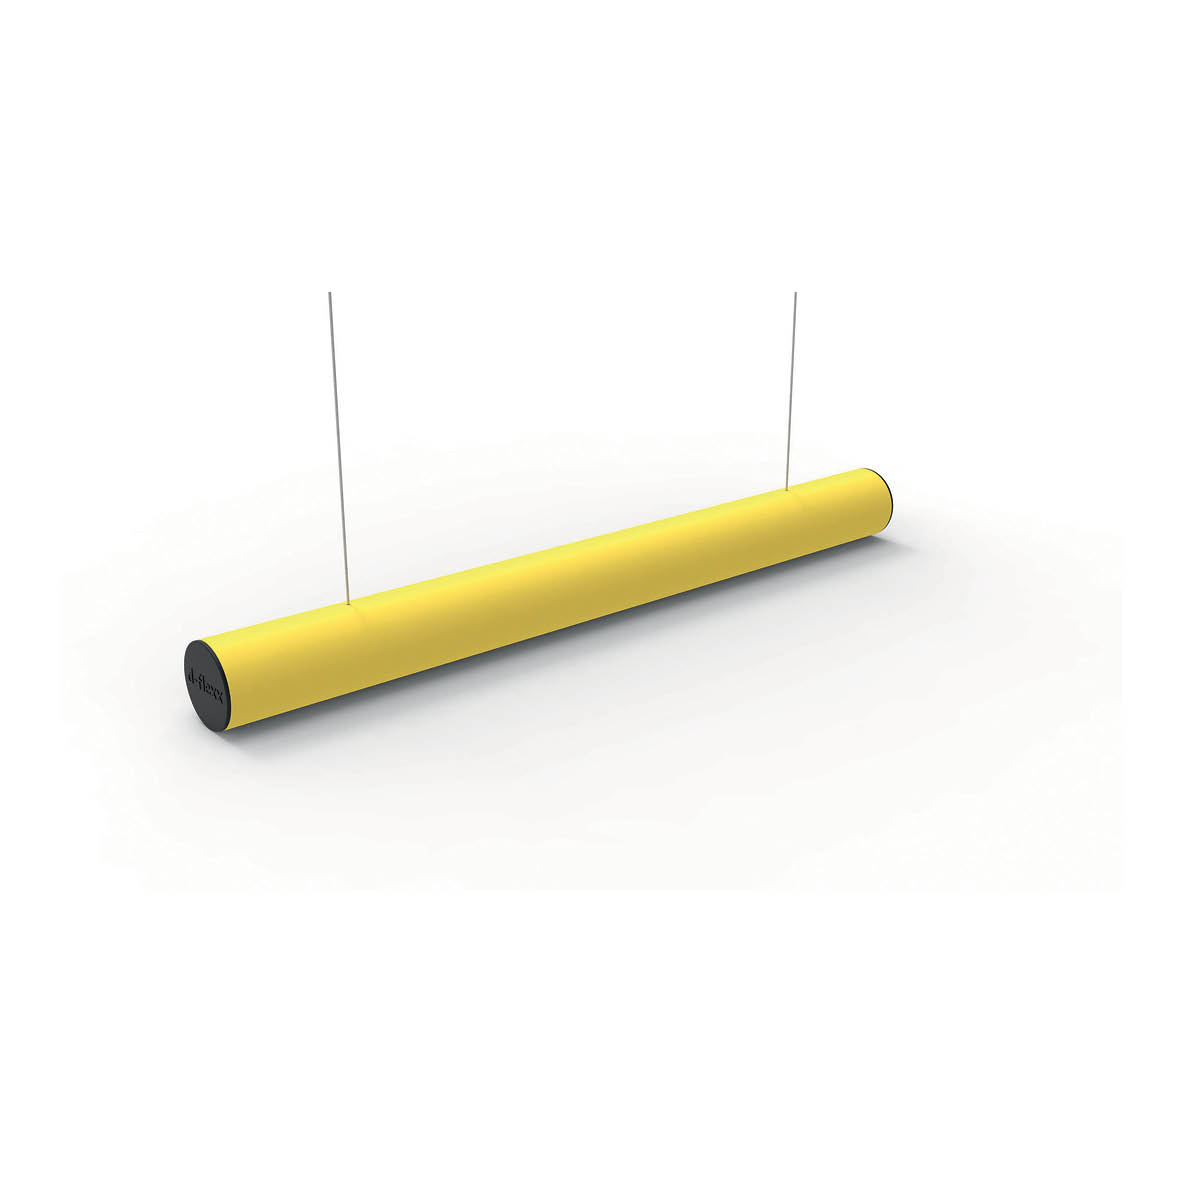 Höchsthöhenbalken rund, gelber schlagfester Kunststoff, L = 2.0 m, inkl. 2 x 2.2 m Stahlseil, 6.7 kg